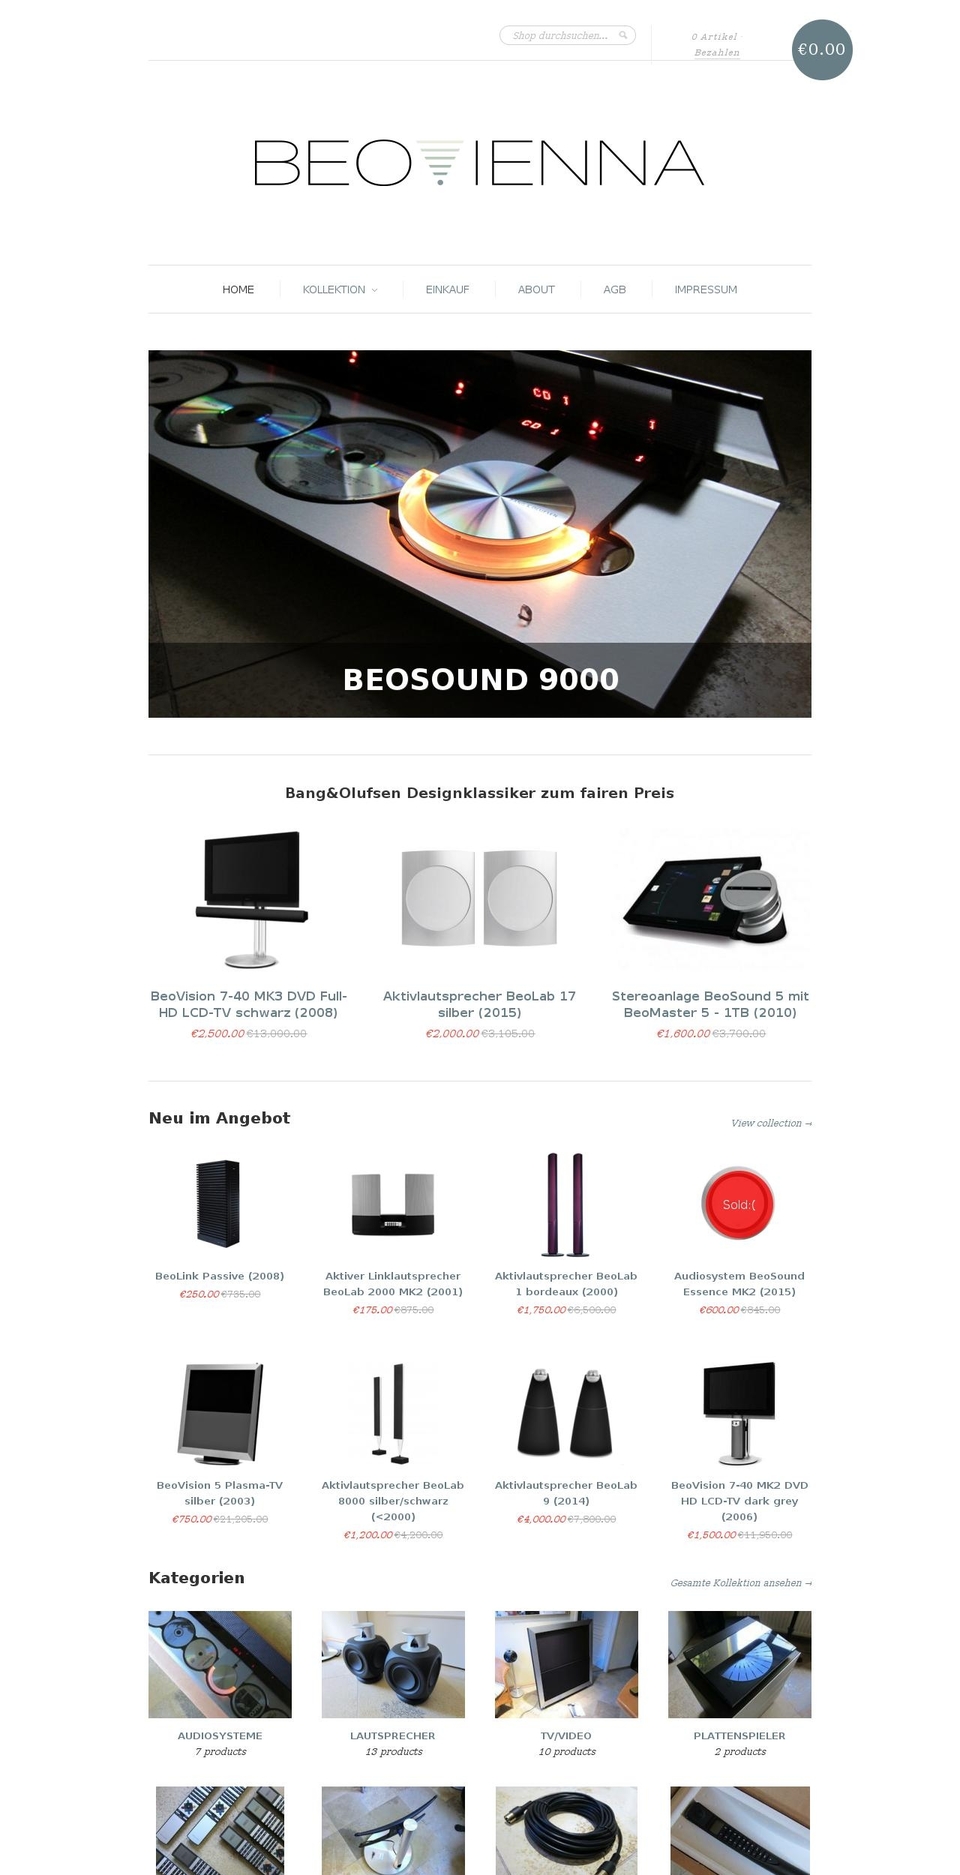 beovienna.com shopify website screenshot